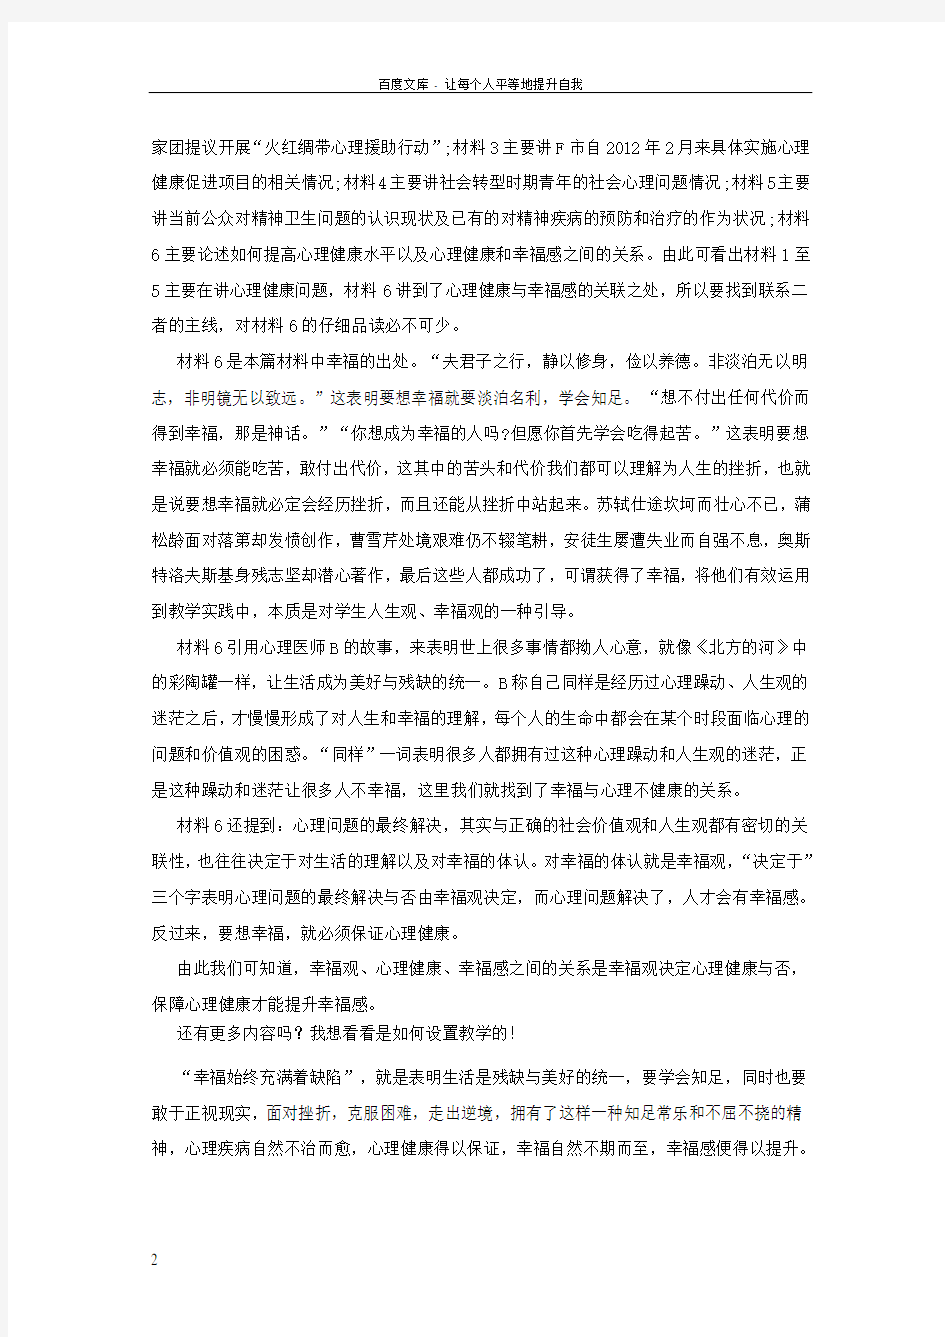 2016重庆上半年公务员考试以申论真题范文切入把握经典写作思路